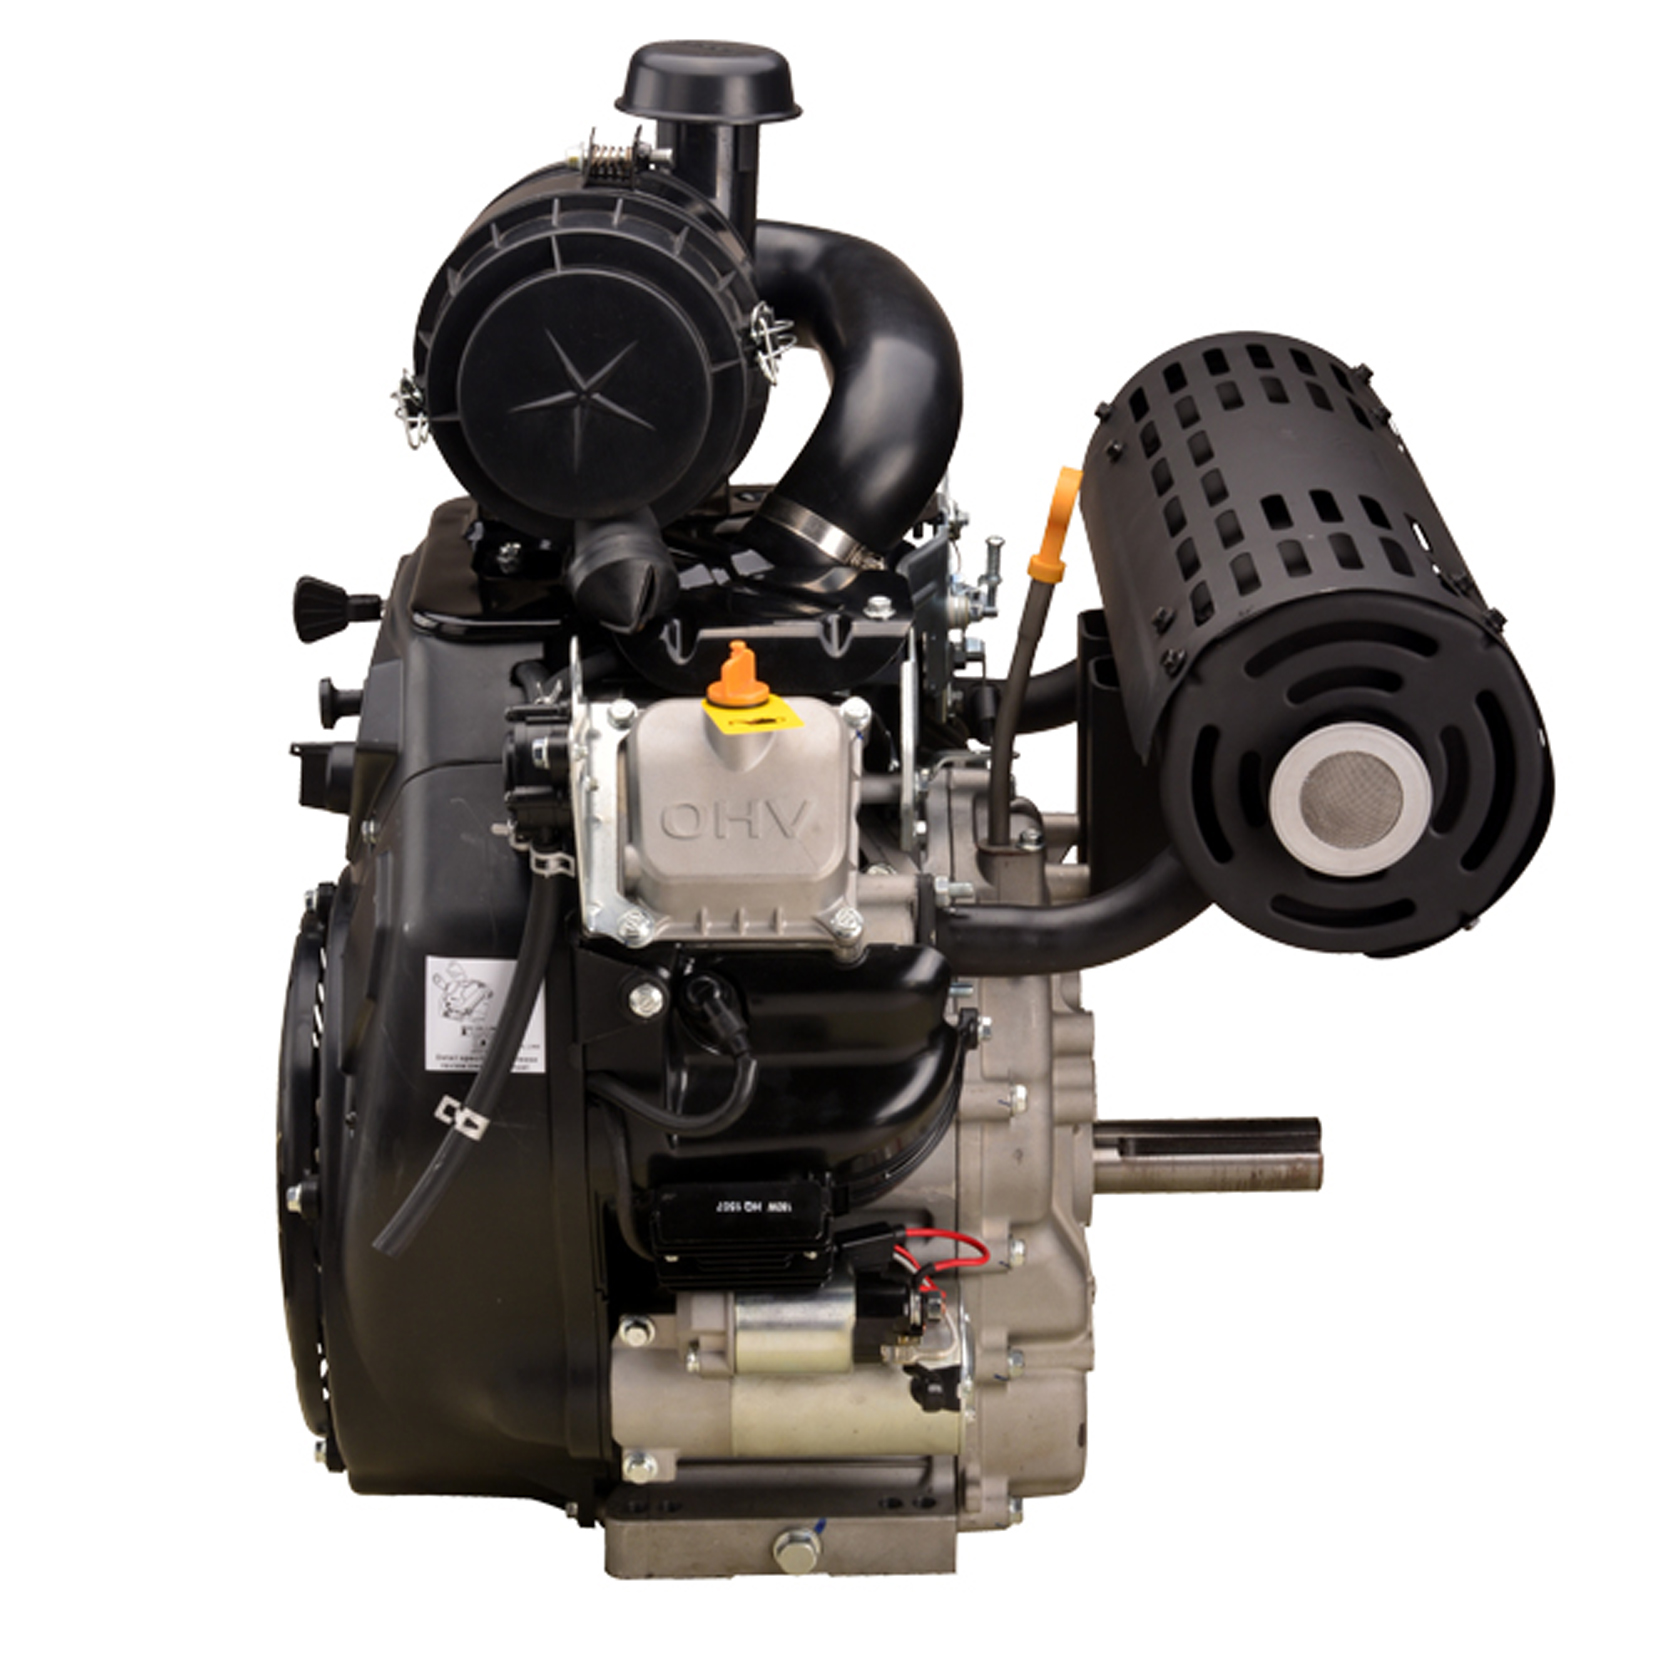 999 CC 35 PS V-Twin-Benzinmotor mit horizontaler Welle für Generator, Hochdruckreiniger, Getreideschnecke, Boot mit EPA EURO-V